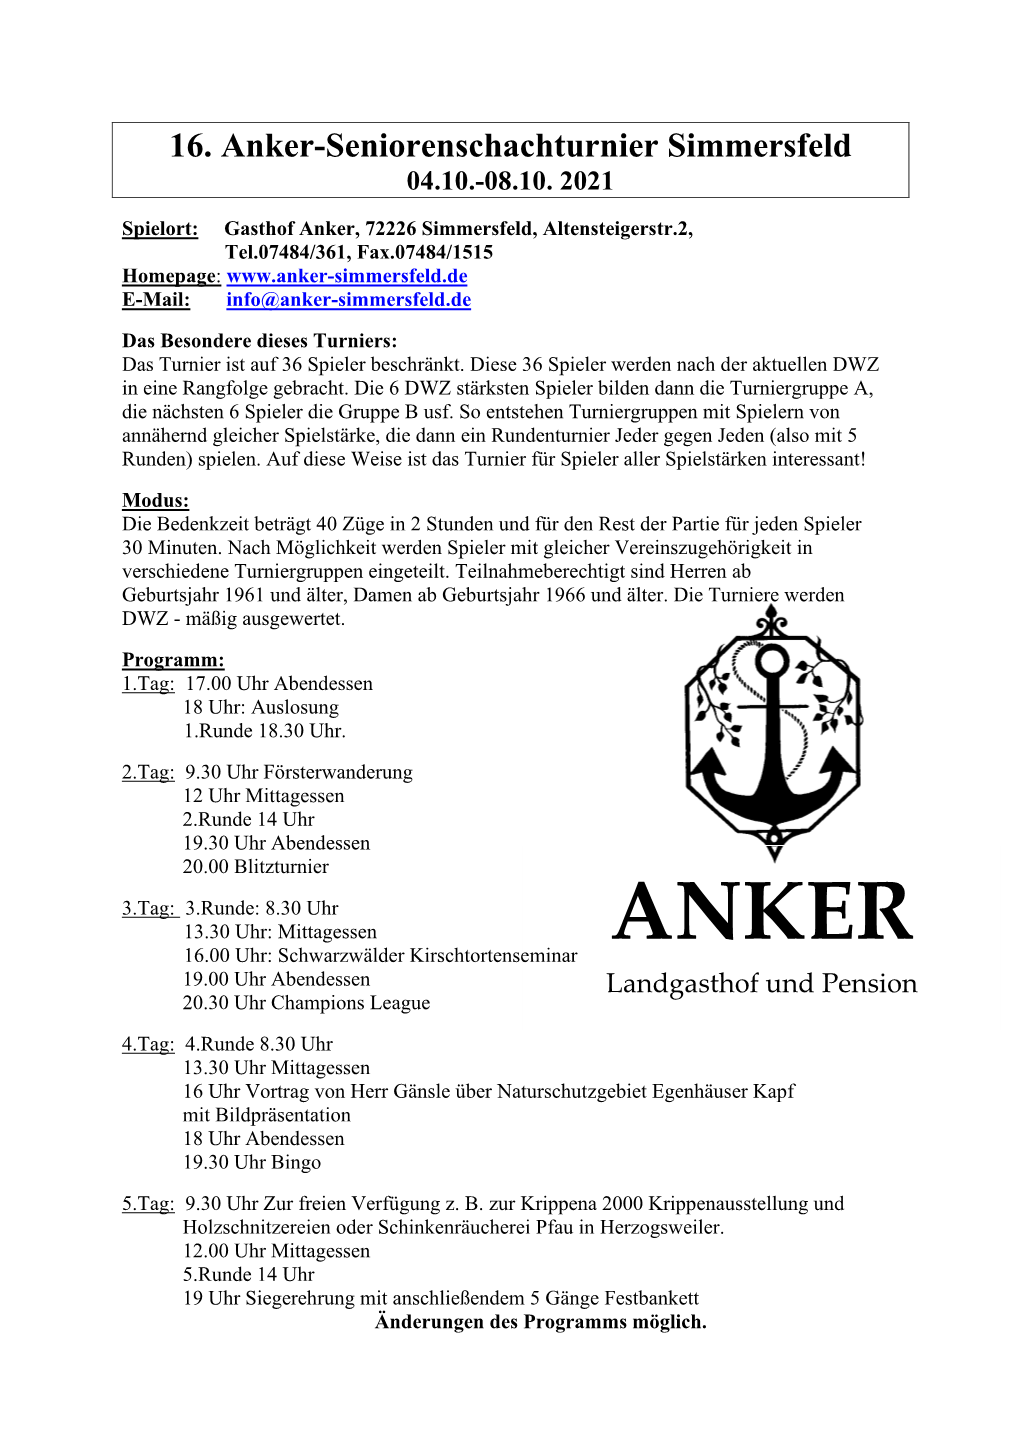 16. Anker-Seniorenschachturnier Simmersfeld 04.10.-08.10